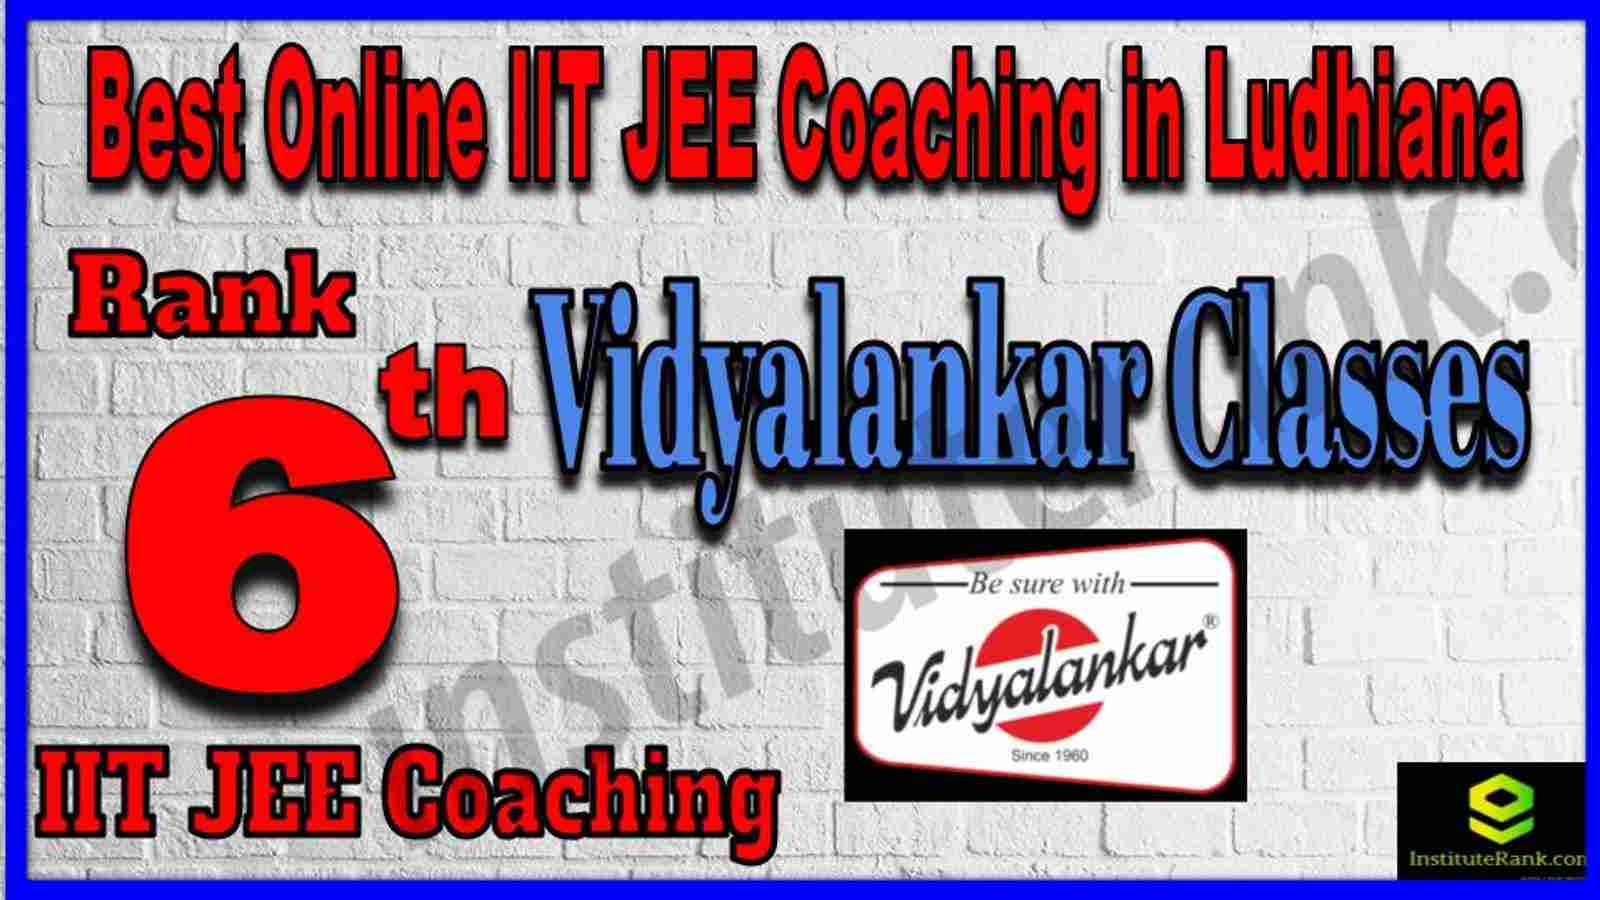 Rank 6th Best Online IIT JEE Coaching in Ludhiana